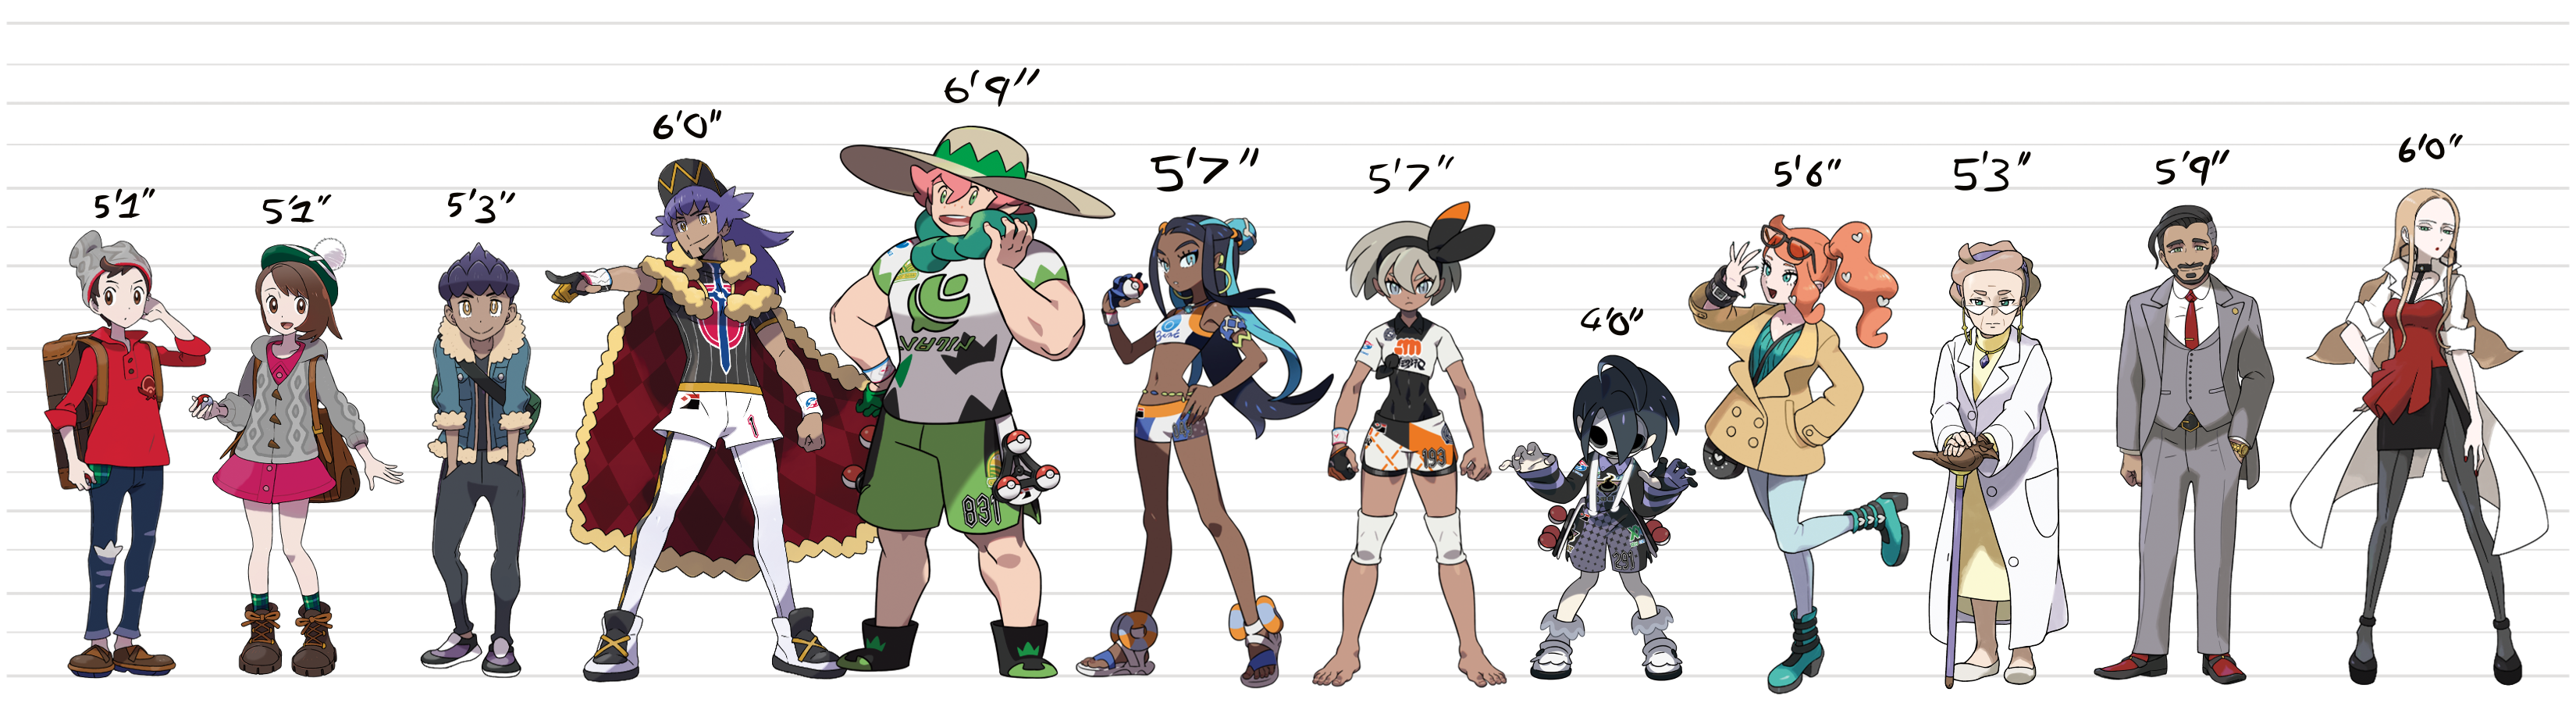 pokemon height chart